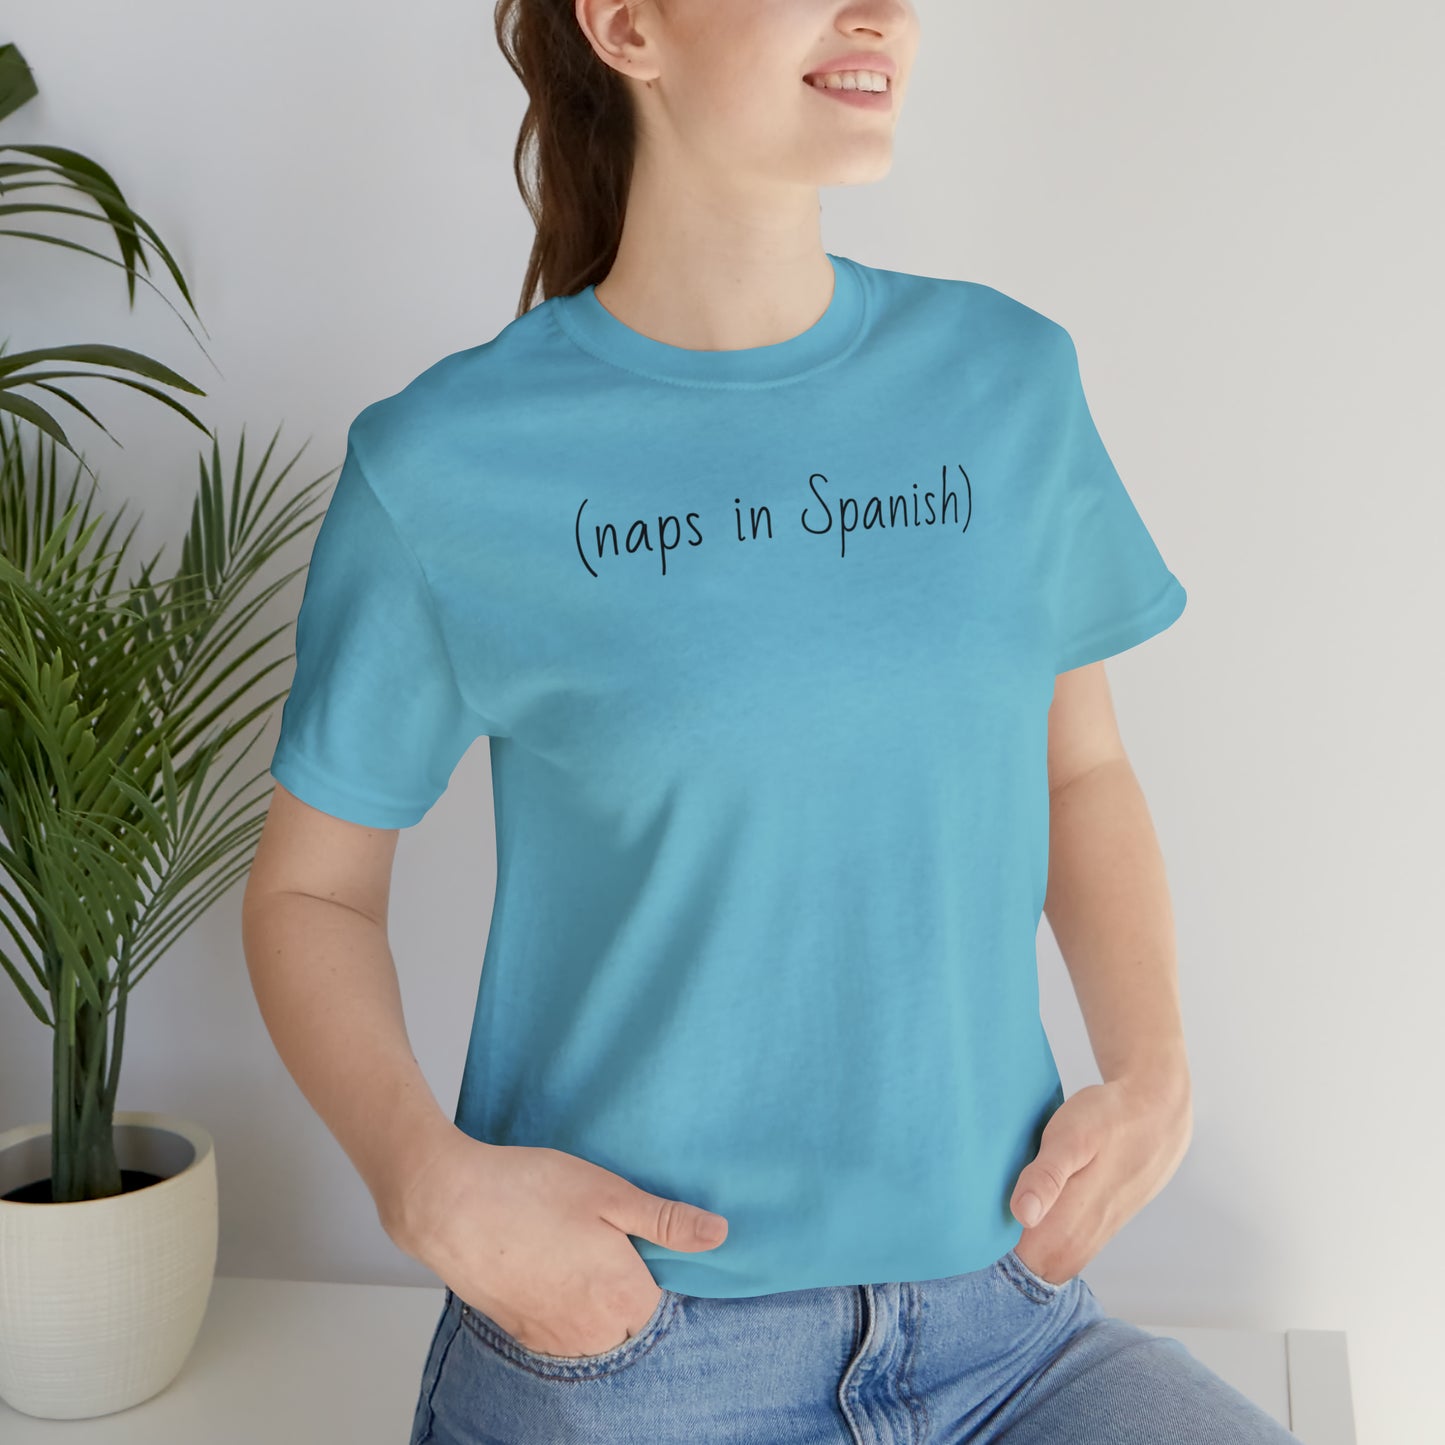 (naps in Spanish), Shirt